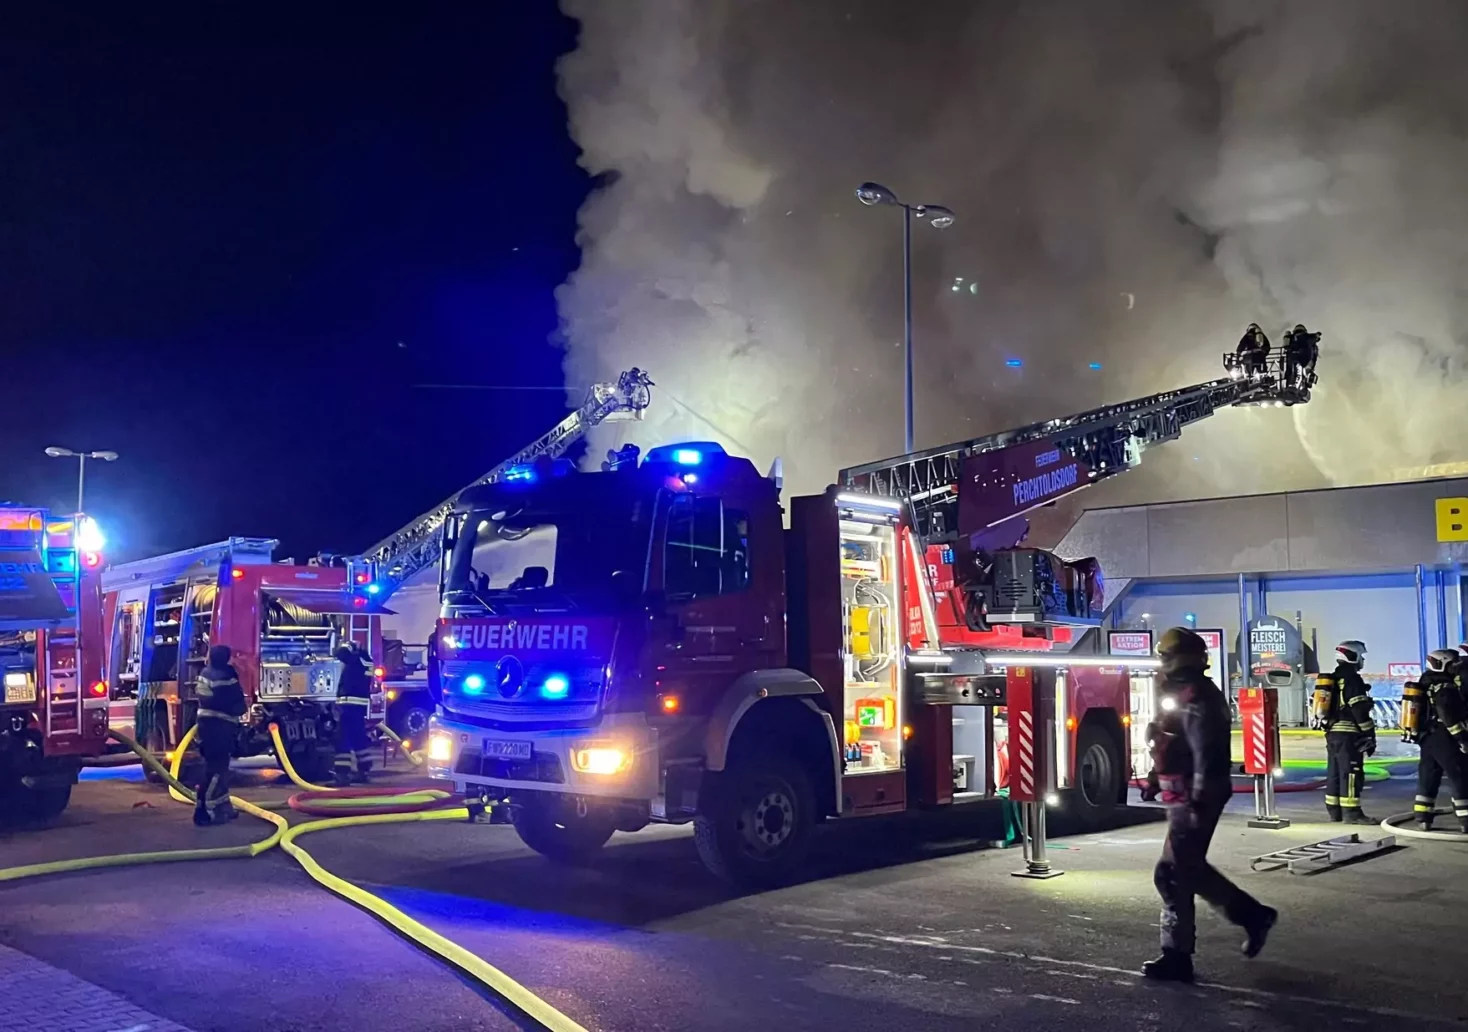 Bild auf 5min.at zeigt einen Brand bei einem Supermarkt.